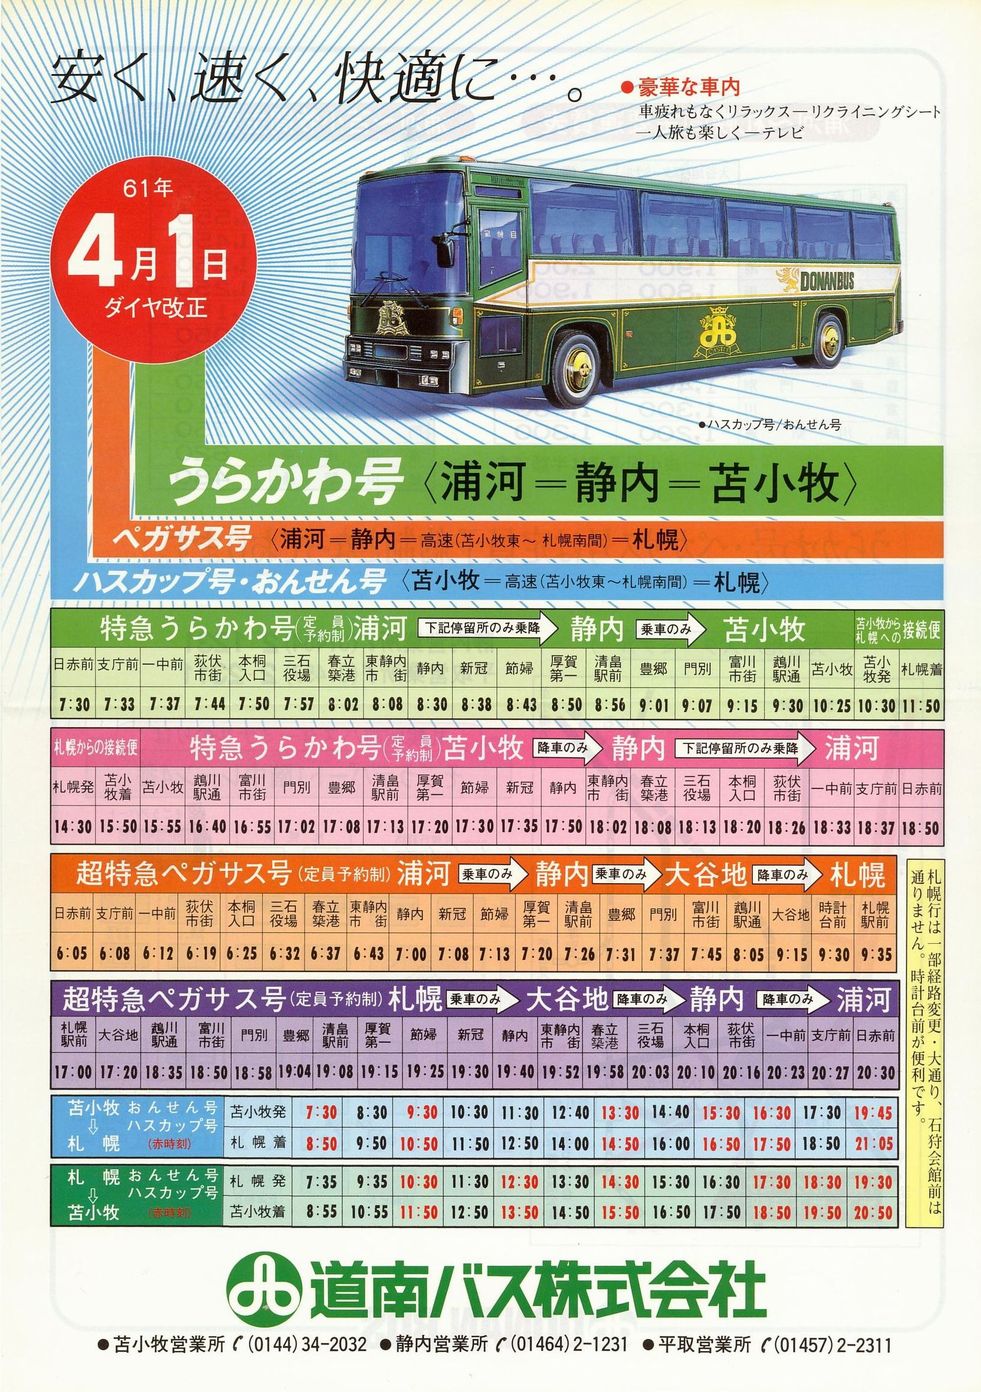 1986-04-01改正_道南バス_特急うらかわ号チラシ表面